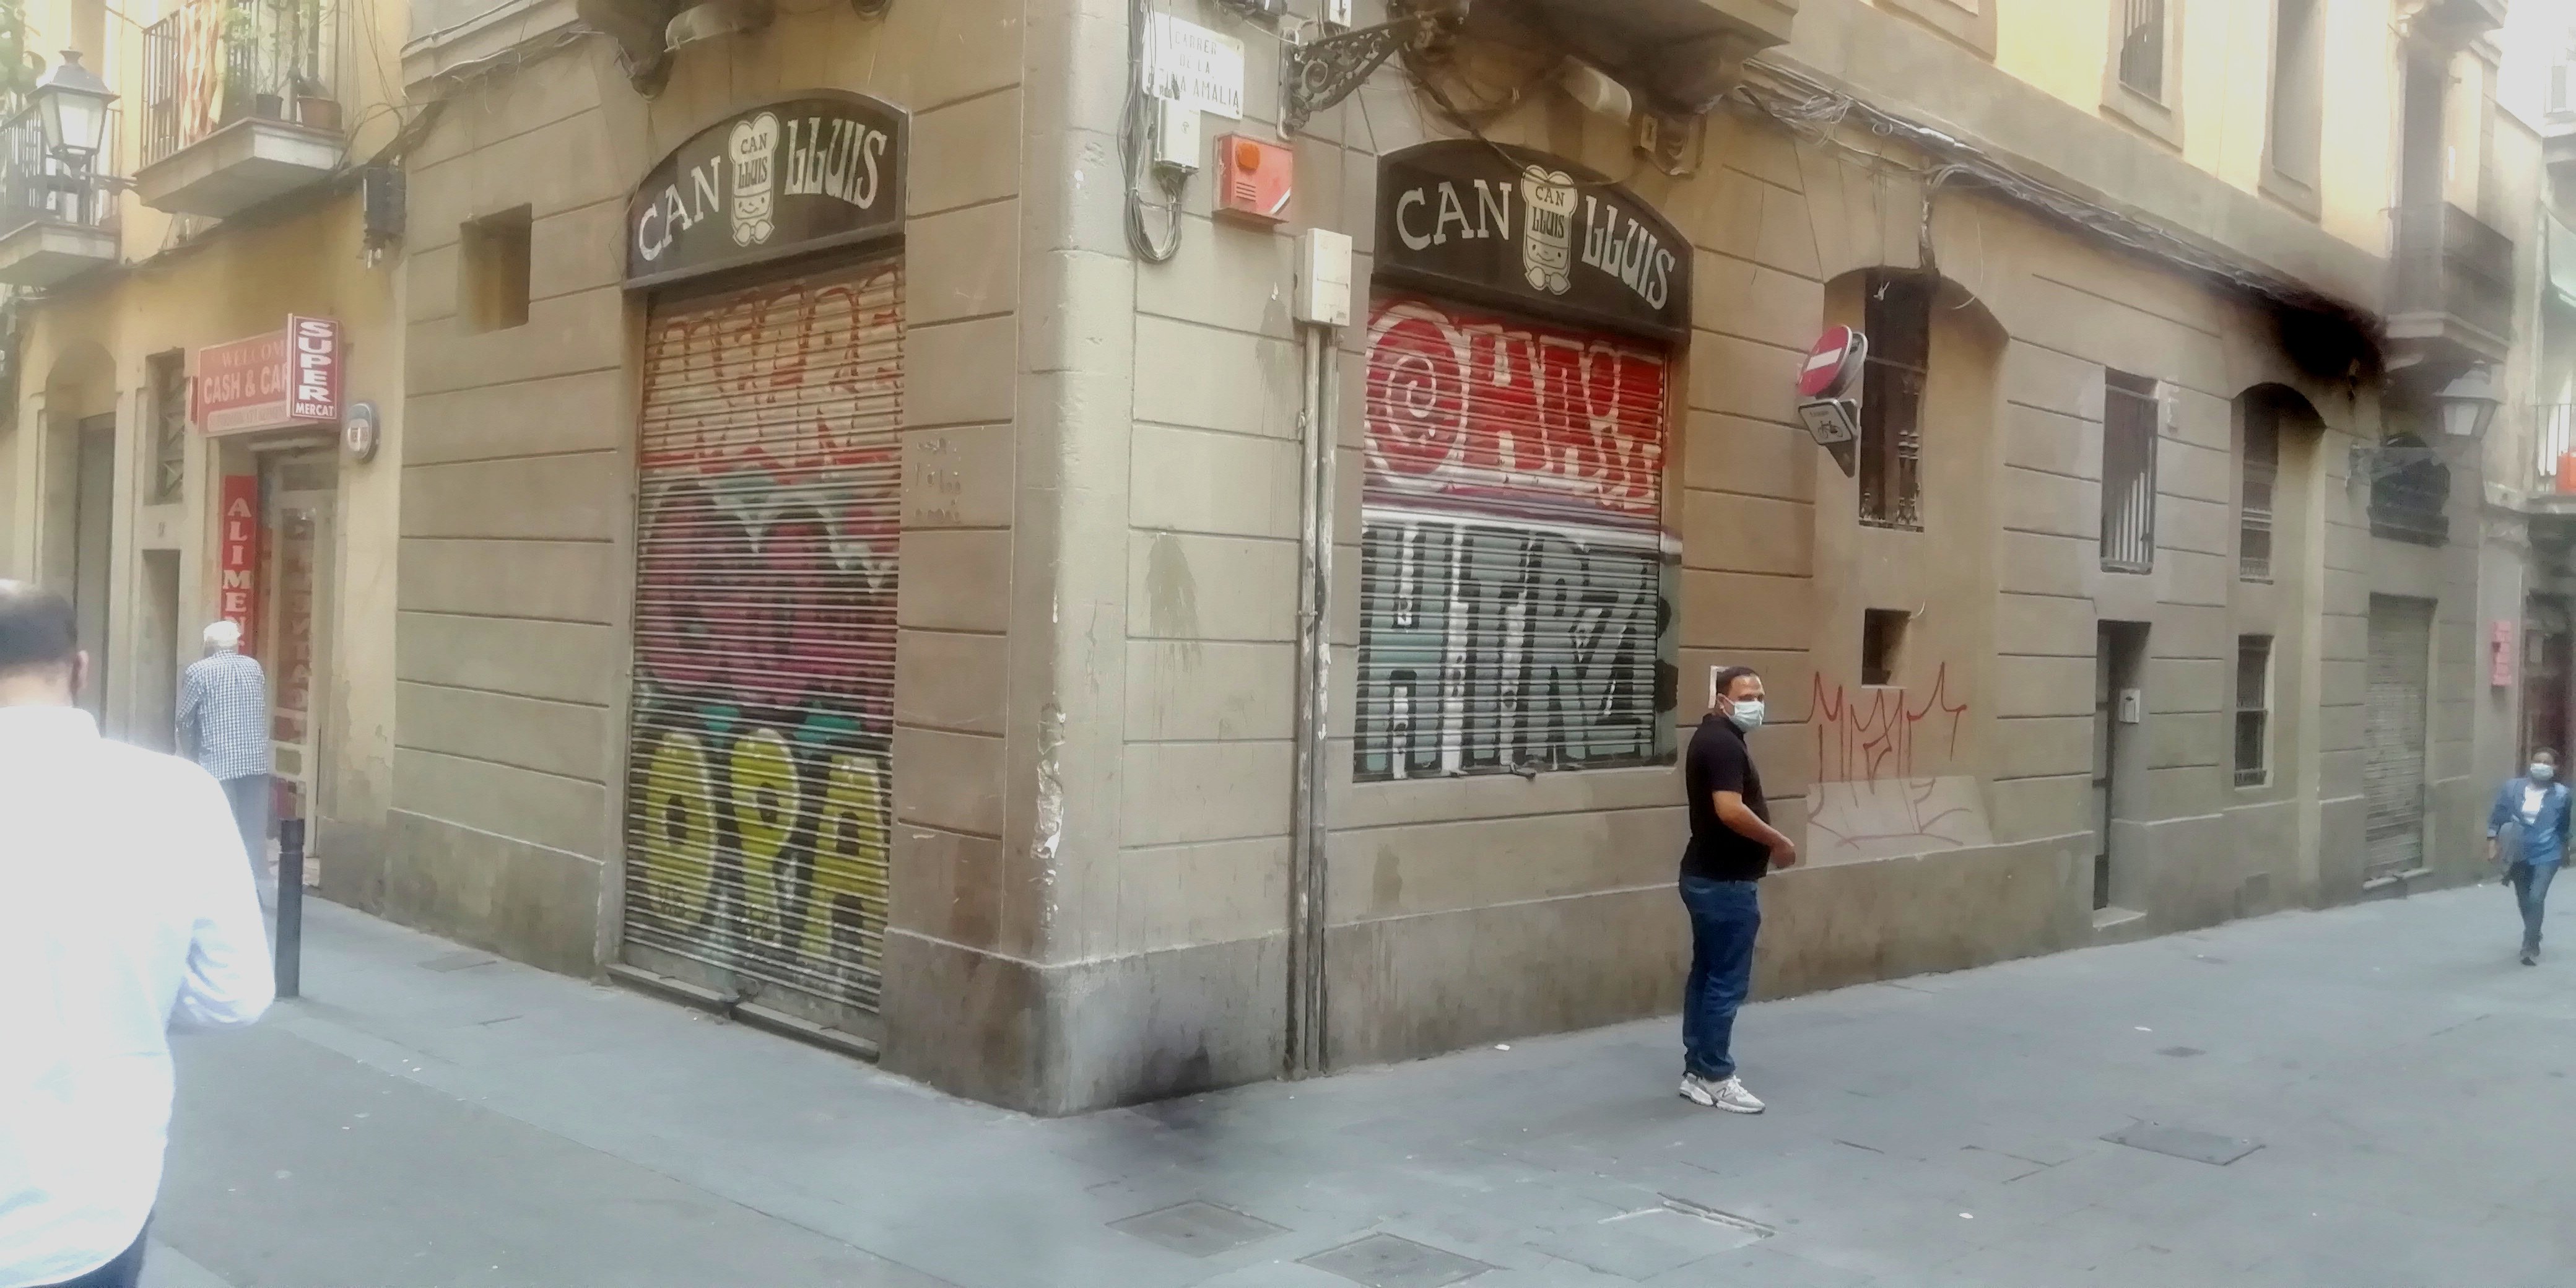 El restaurant Can Lluís del Raval: tancat, desnonat i pendent del jutge